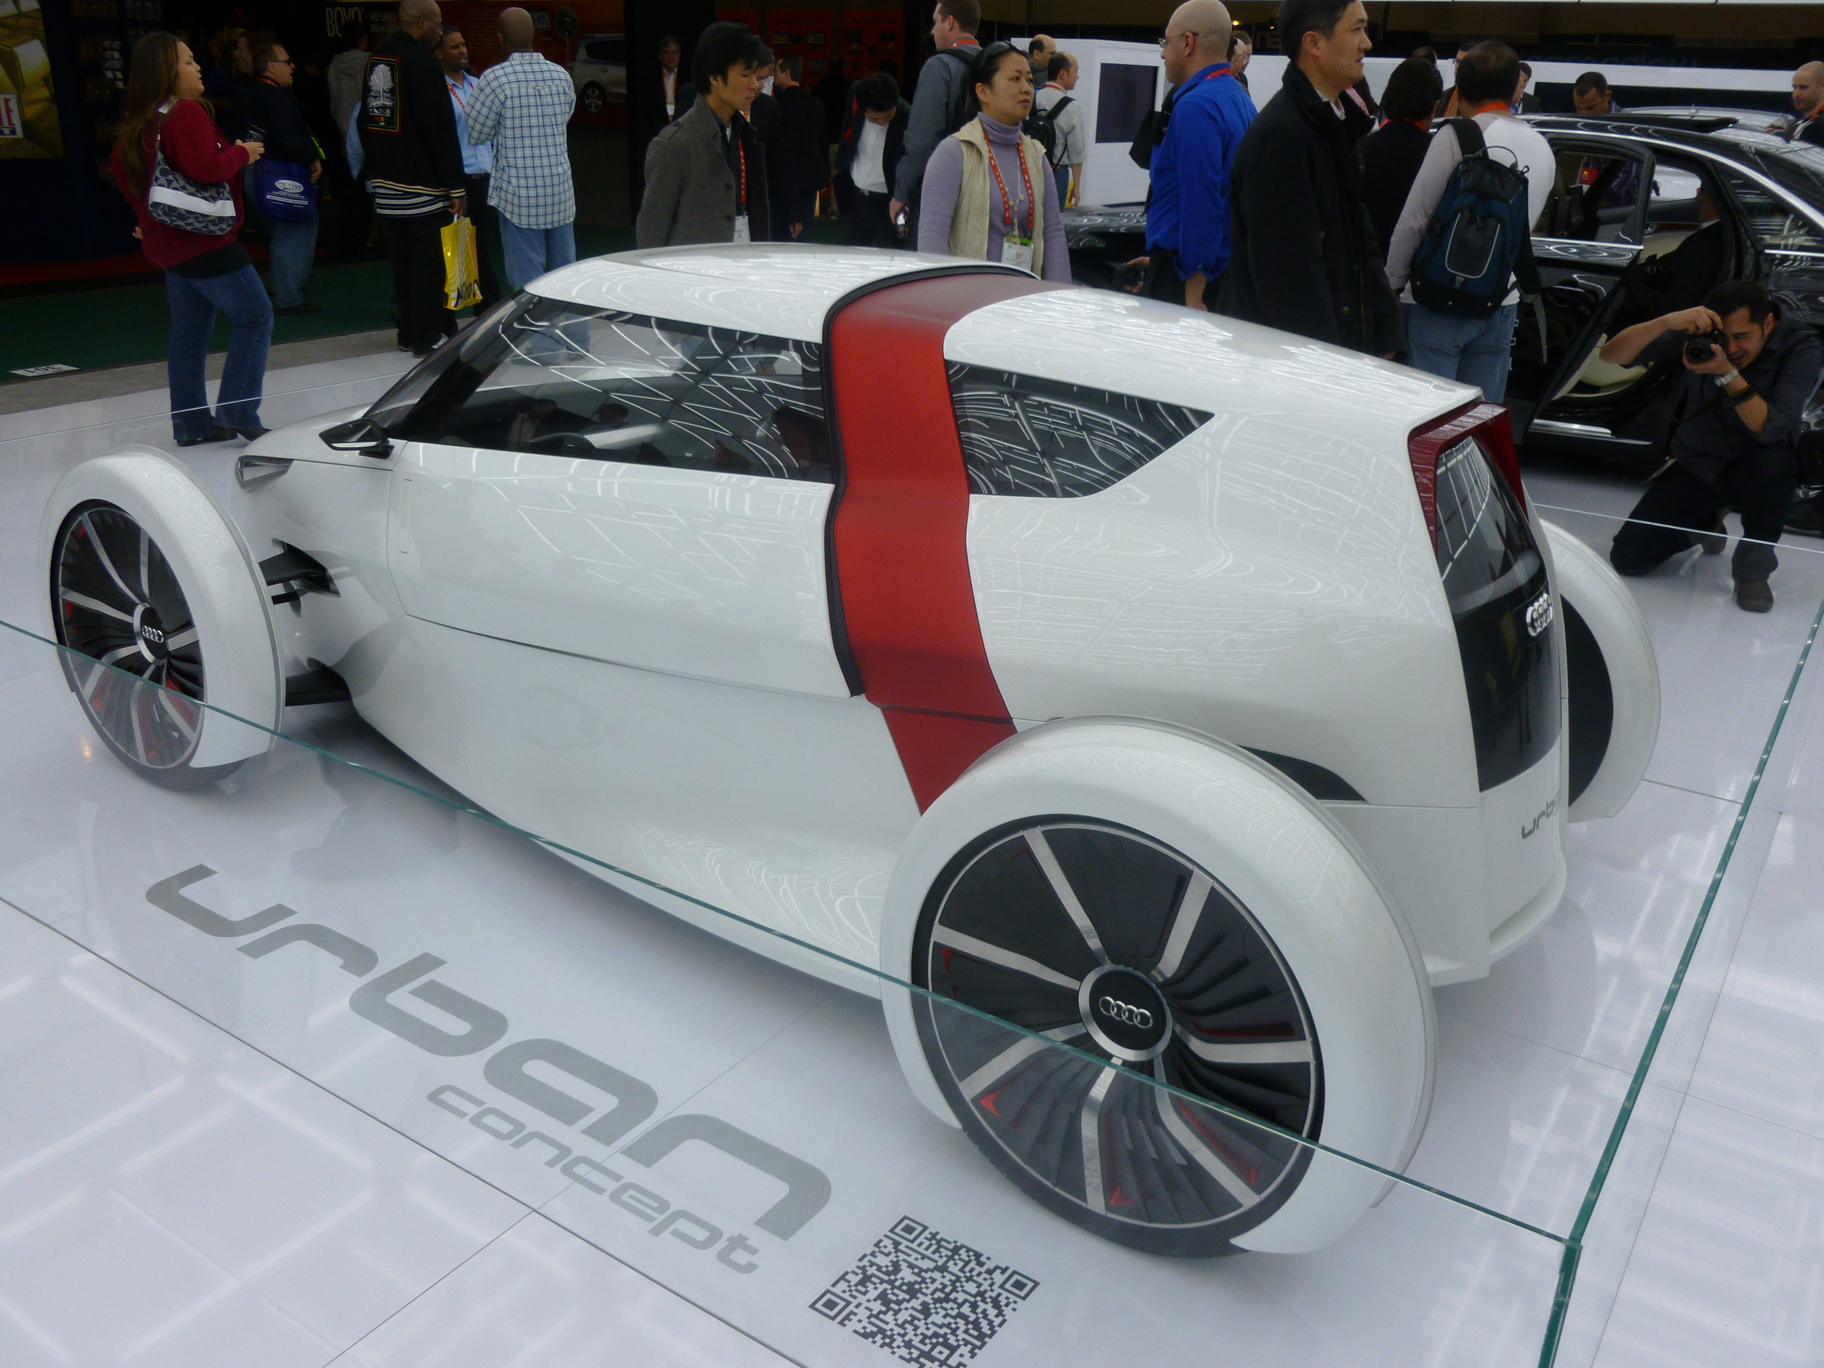 La CES 2012 tuvo una característica muy particular: una sección destinada a los autos, donde se destacaron los concepts y los autos eléctricos.